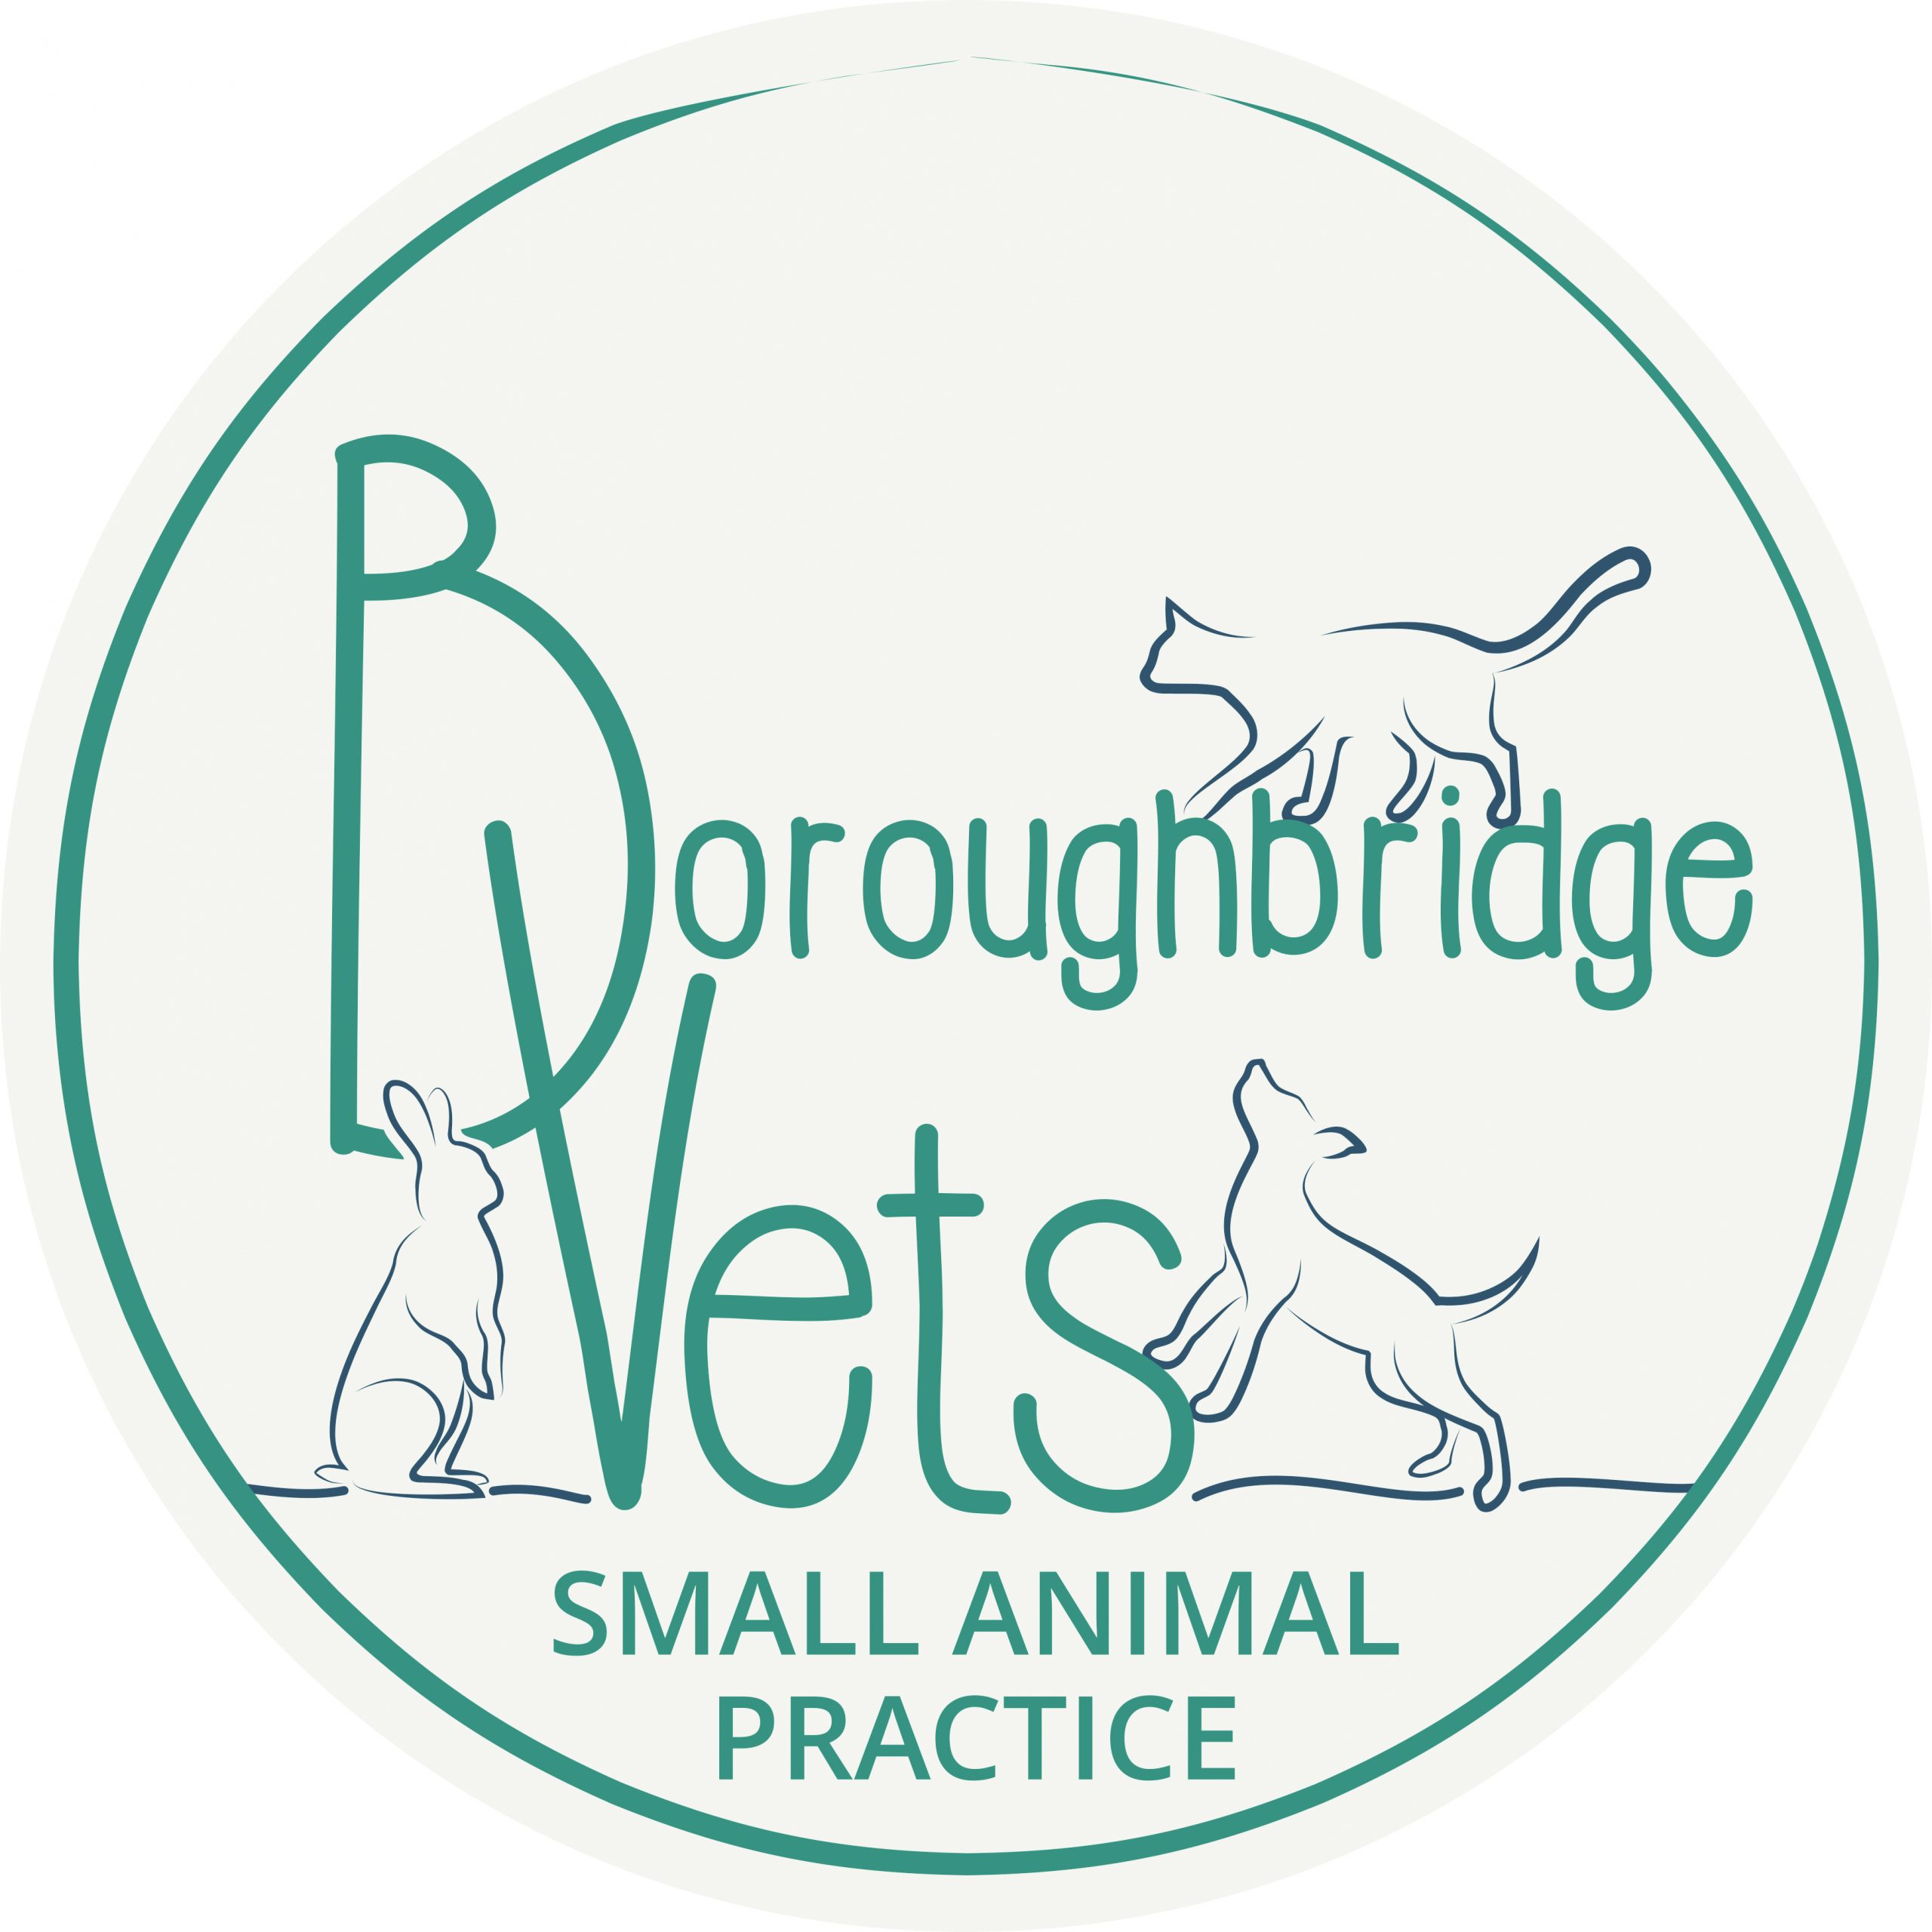 Boroughbridge Vets Small Animal Practice